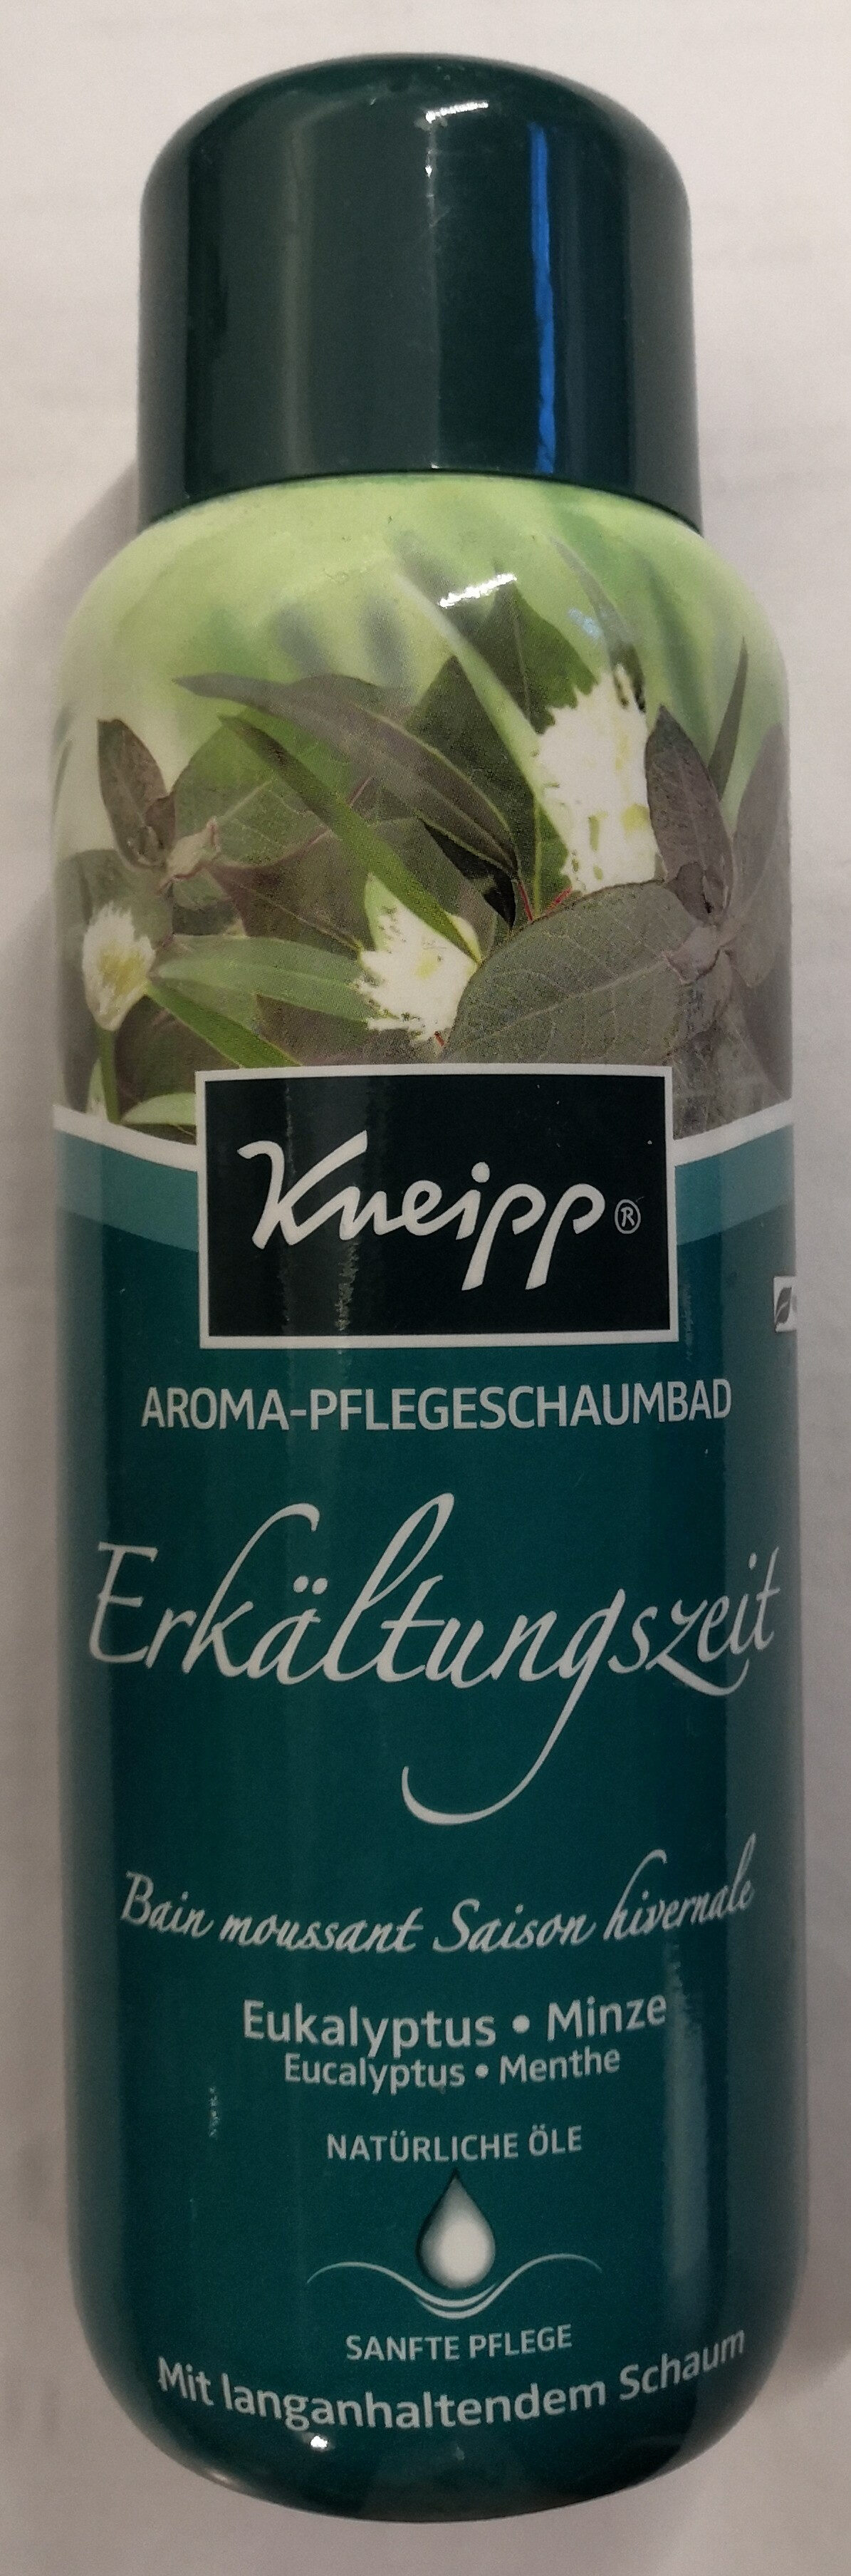 Aroma-Pflegeschaumbad Erkältungszeit Eukalyptus-Minze - Produkt - de